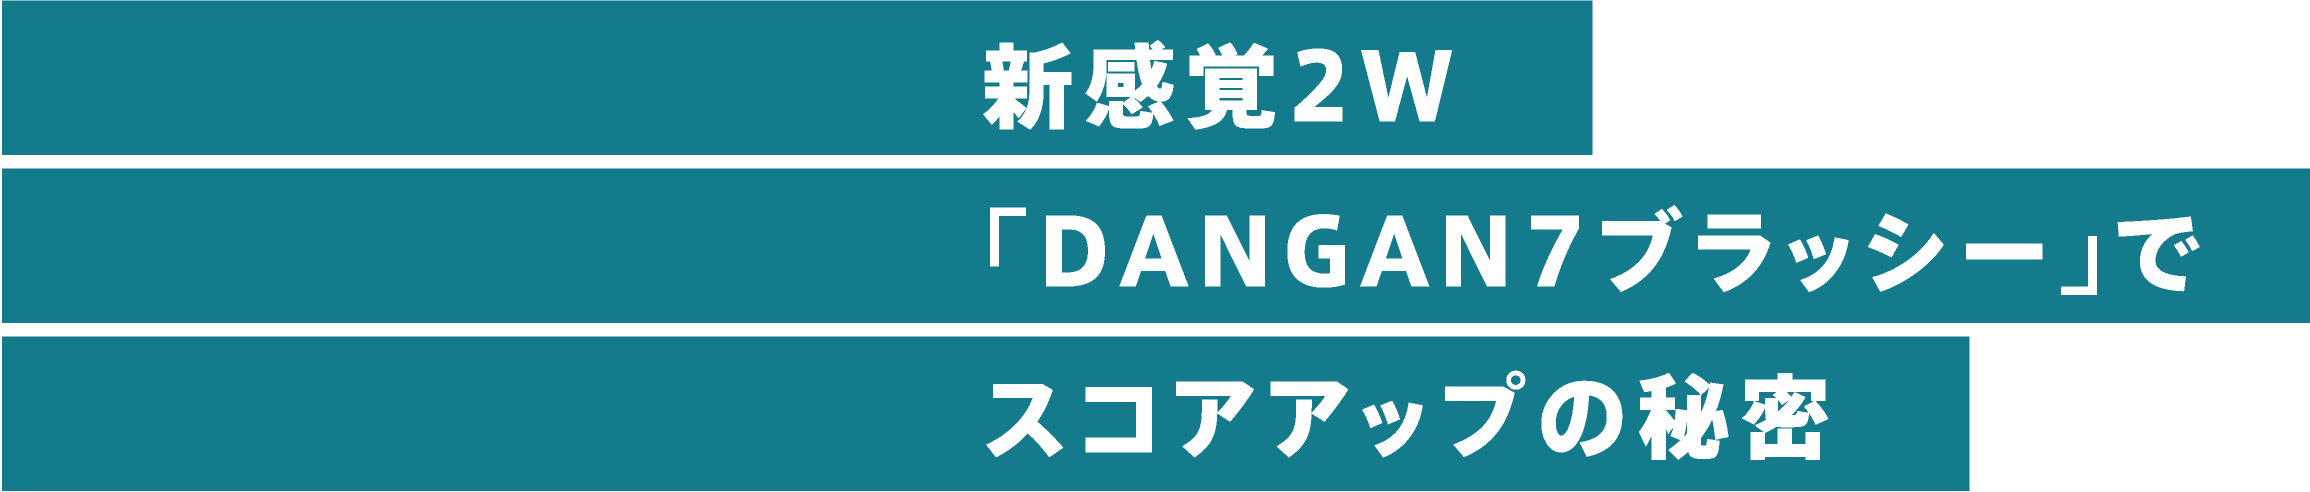 新感覚2W「DANGAN7ブラッシー」でスコアアップの秘密